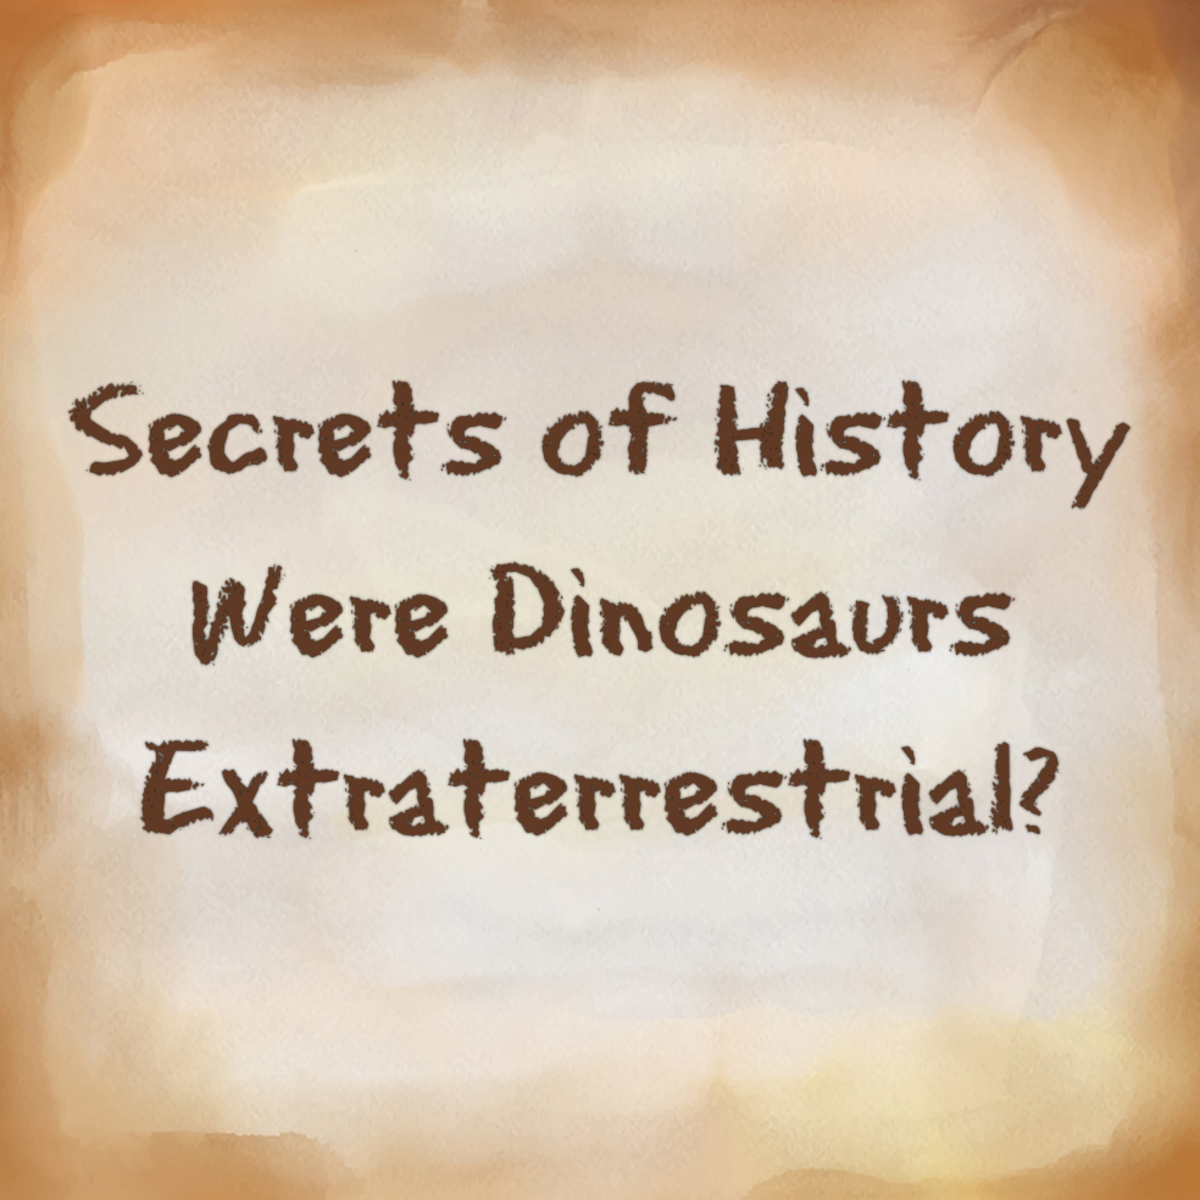 Were Dinosaurs Extraterrestrial?